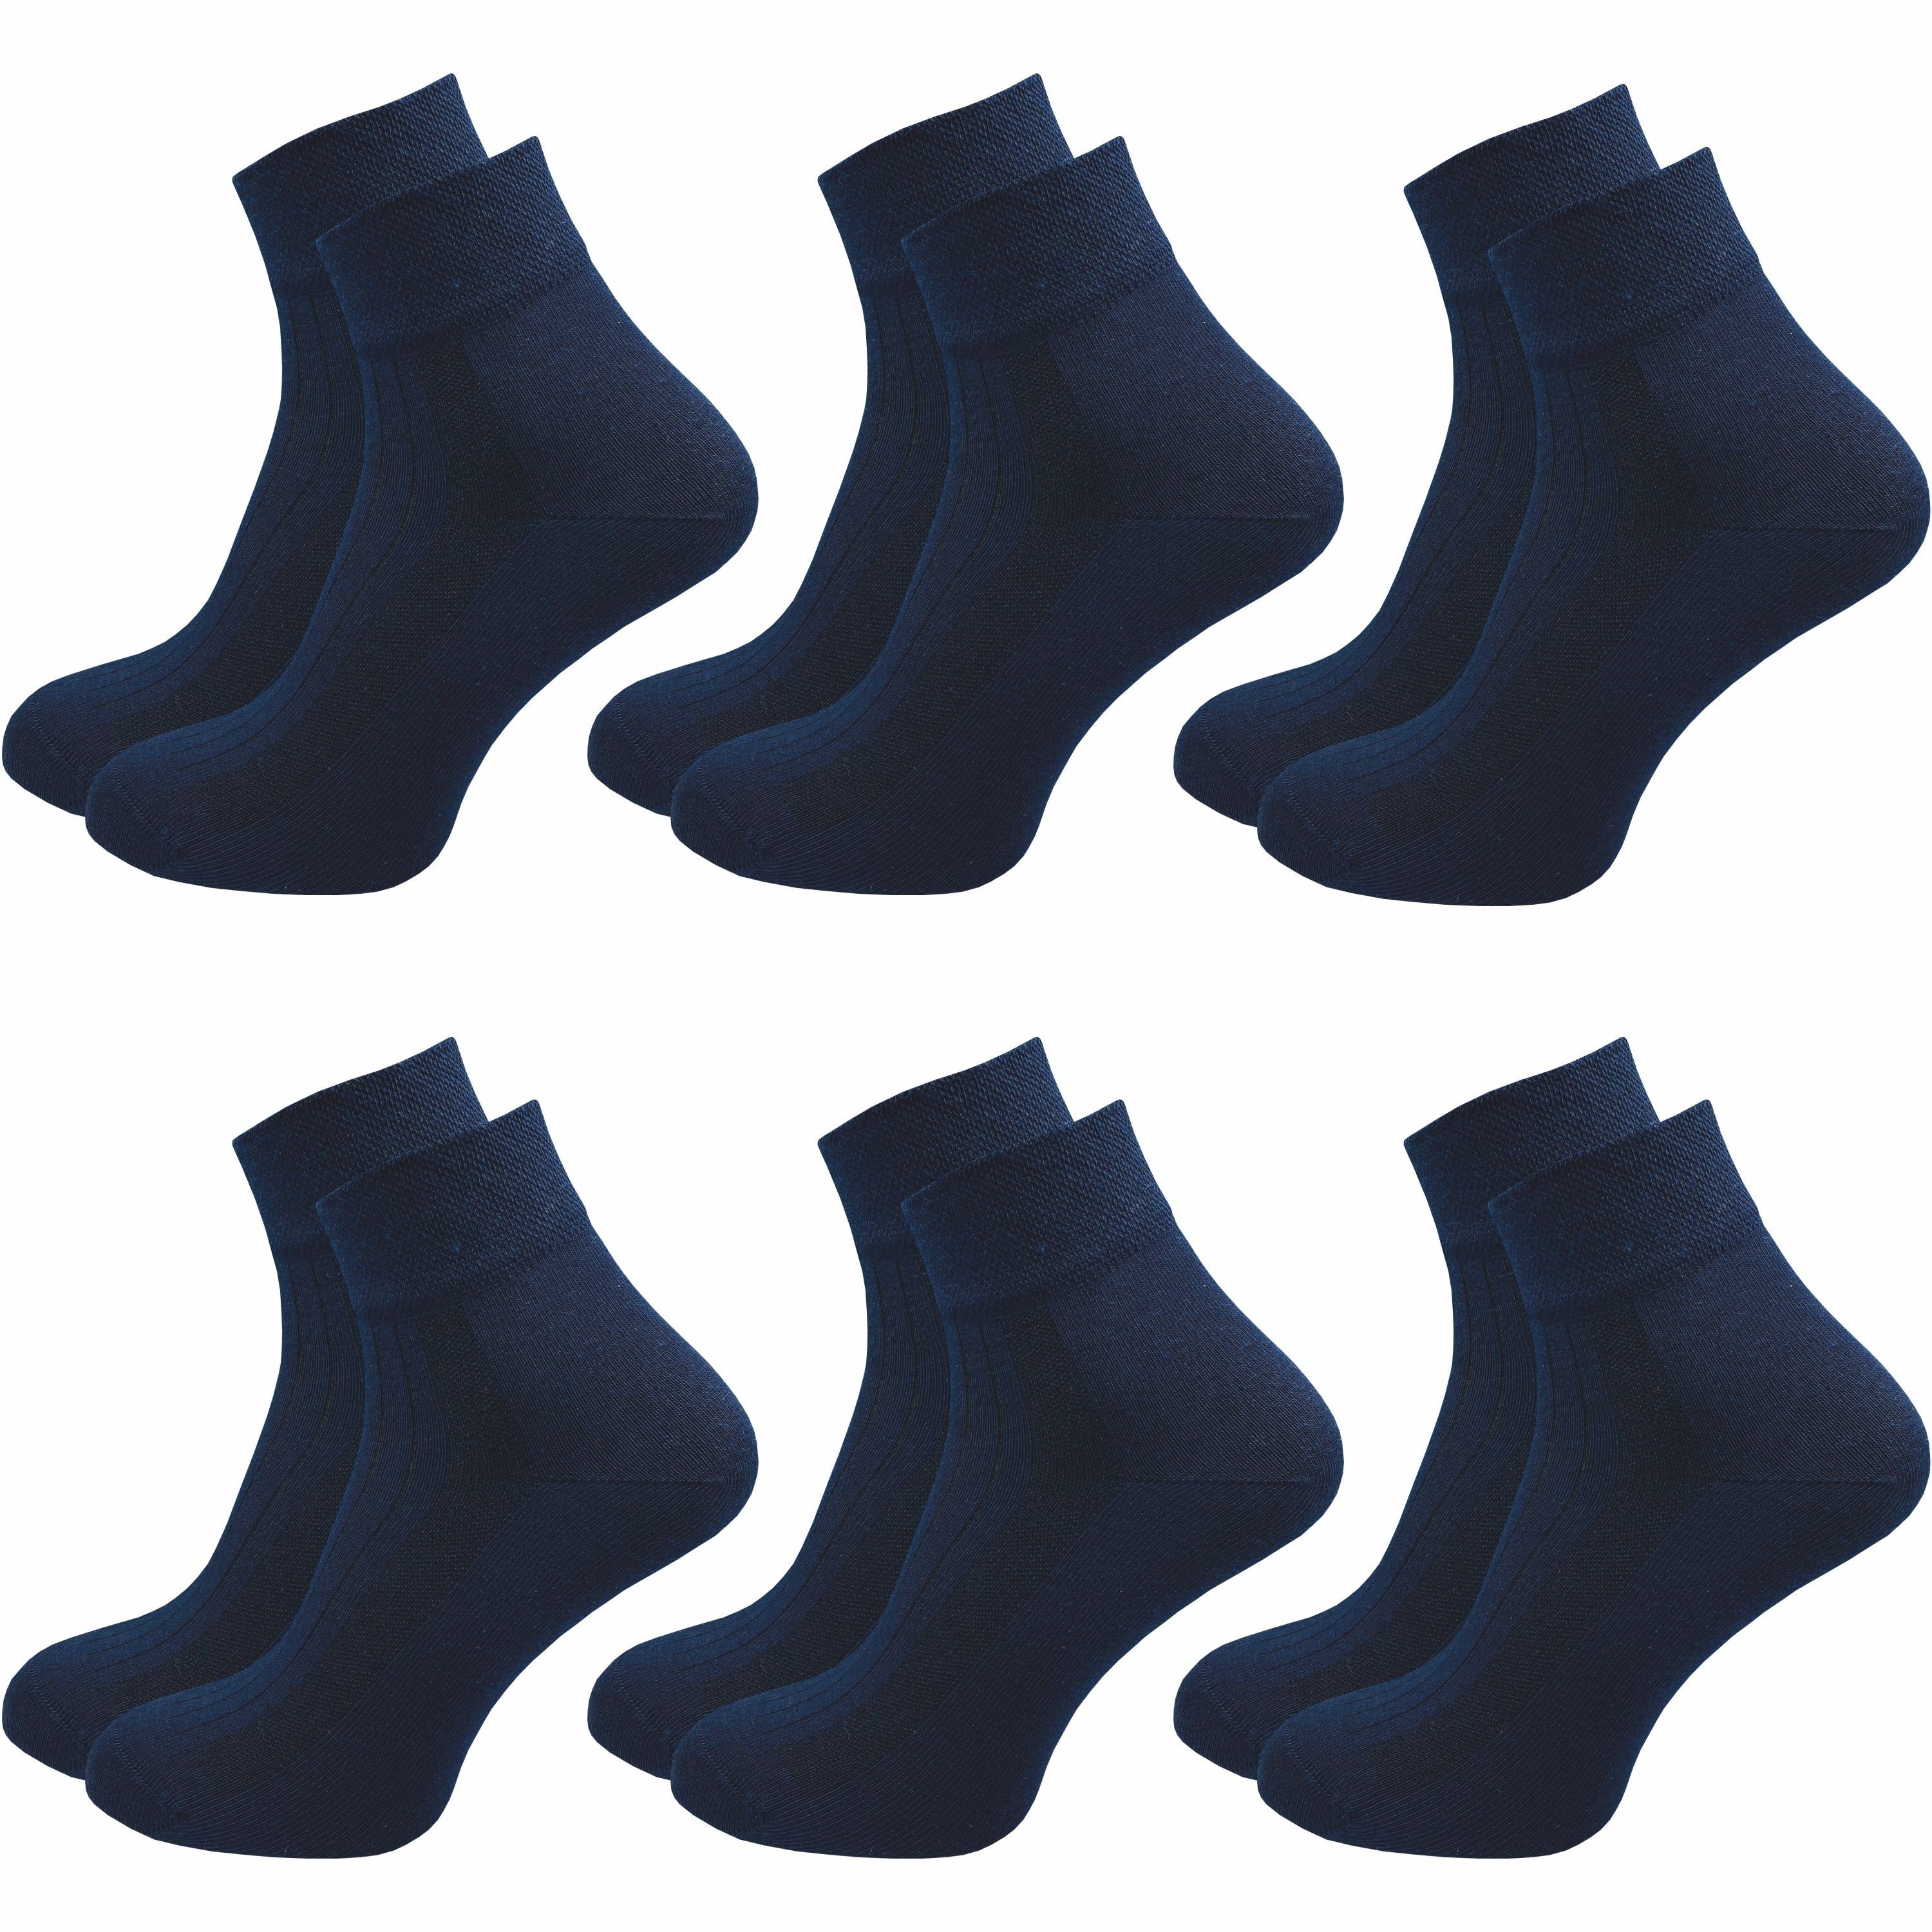 GAWILO Diabetikersocken für Damen ohne Gummibund & ohne Naht in weiß, schwarz & farbig (6 Paar) Breiter Piquet-Strick am Komfortbund, Venensocke aus weicher Baumwolle blau